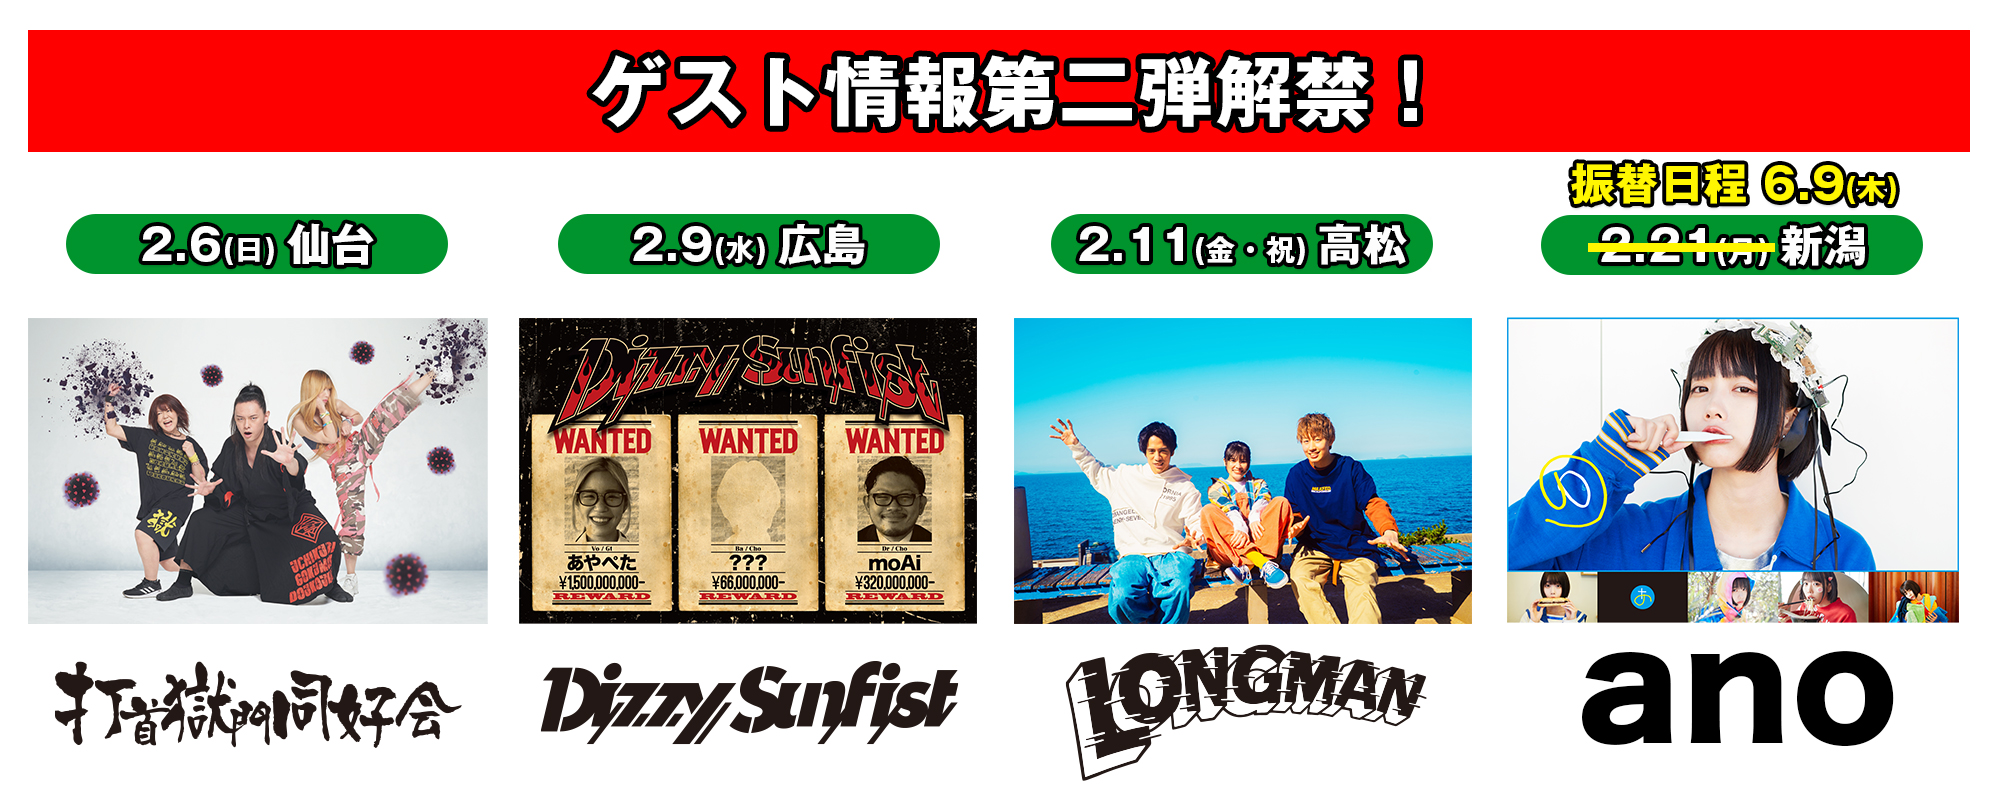 ヤバイTシャツ屋さん “Tank-top of the DVD IV” TOUR 20226.4(土) AM10 